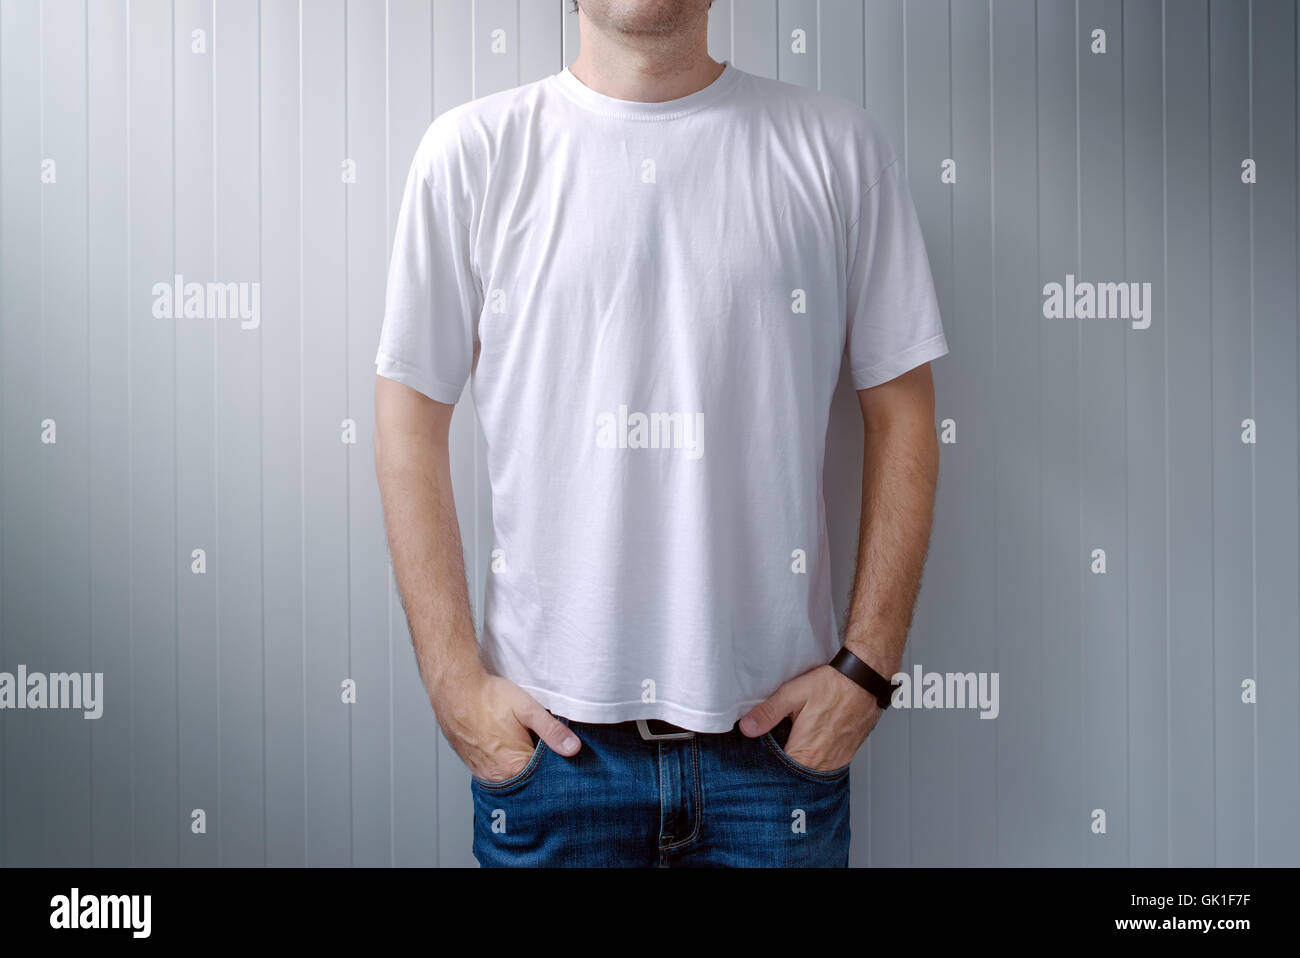 Legerer Mann in Jeans Hosen und weiße T-shirt als textfreiraum Shirt print Grafikdesign mock-up Stockfoto